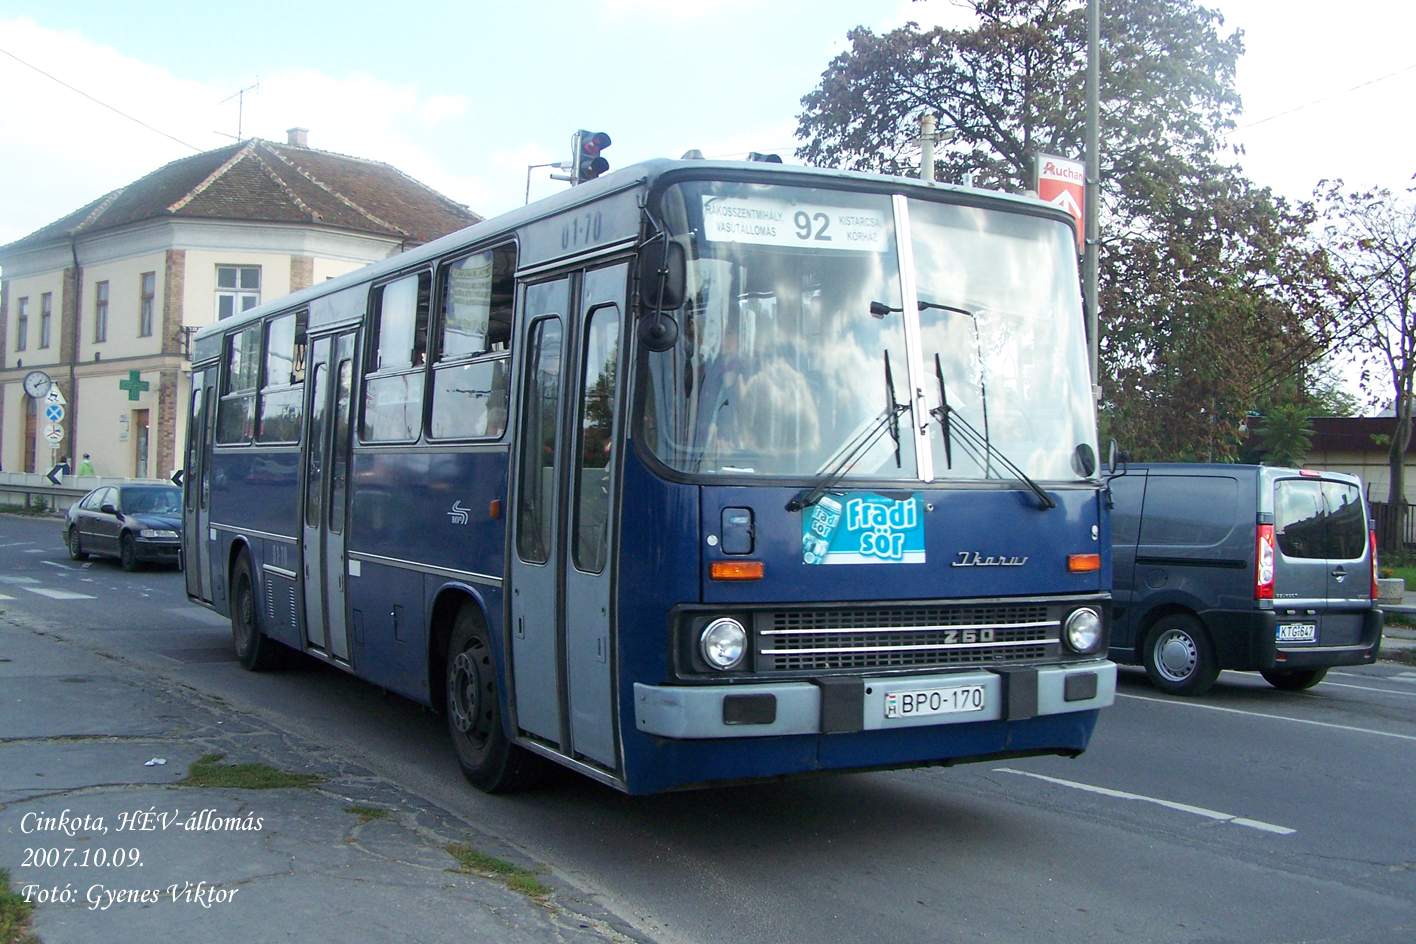 Busz BPO-170.JPG